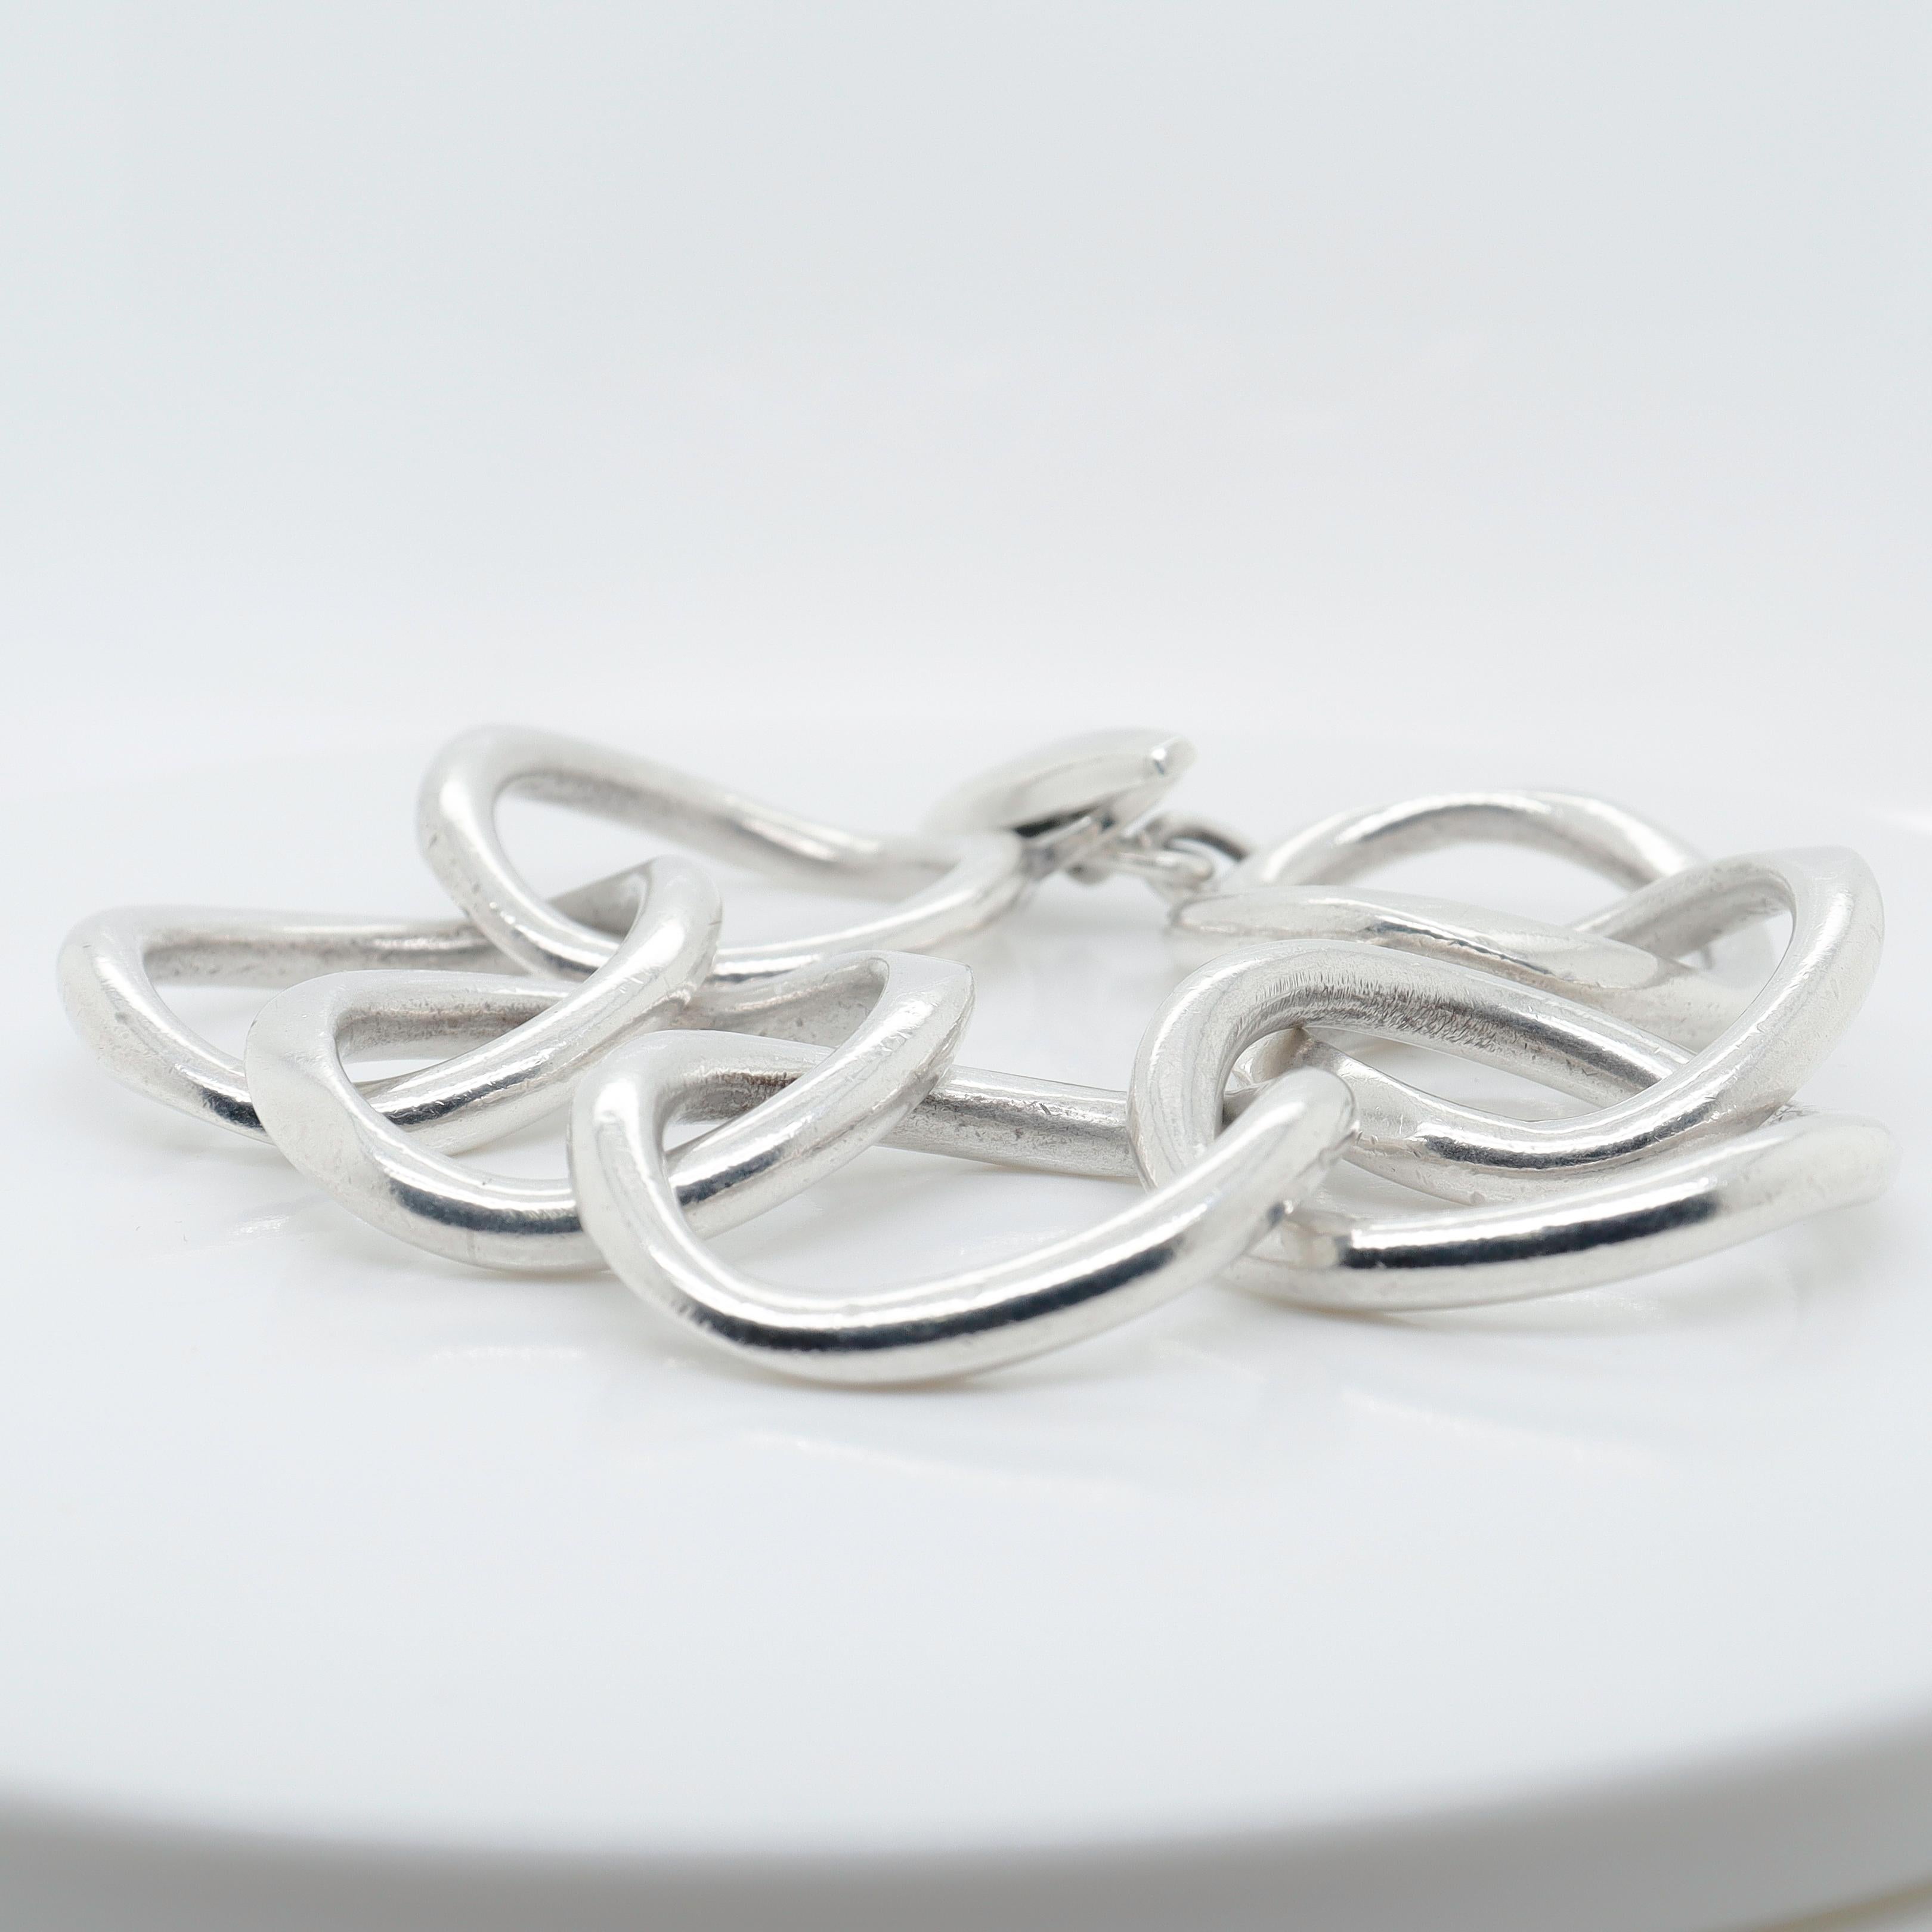 Signed Handmade Danish Modern Sterling Silver Large Link Bracelet by Randers For Sale 3